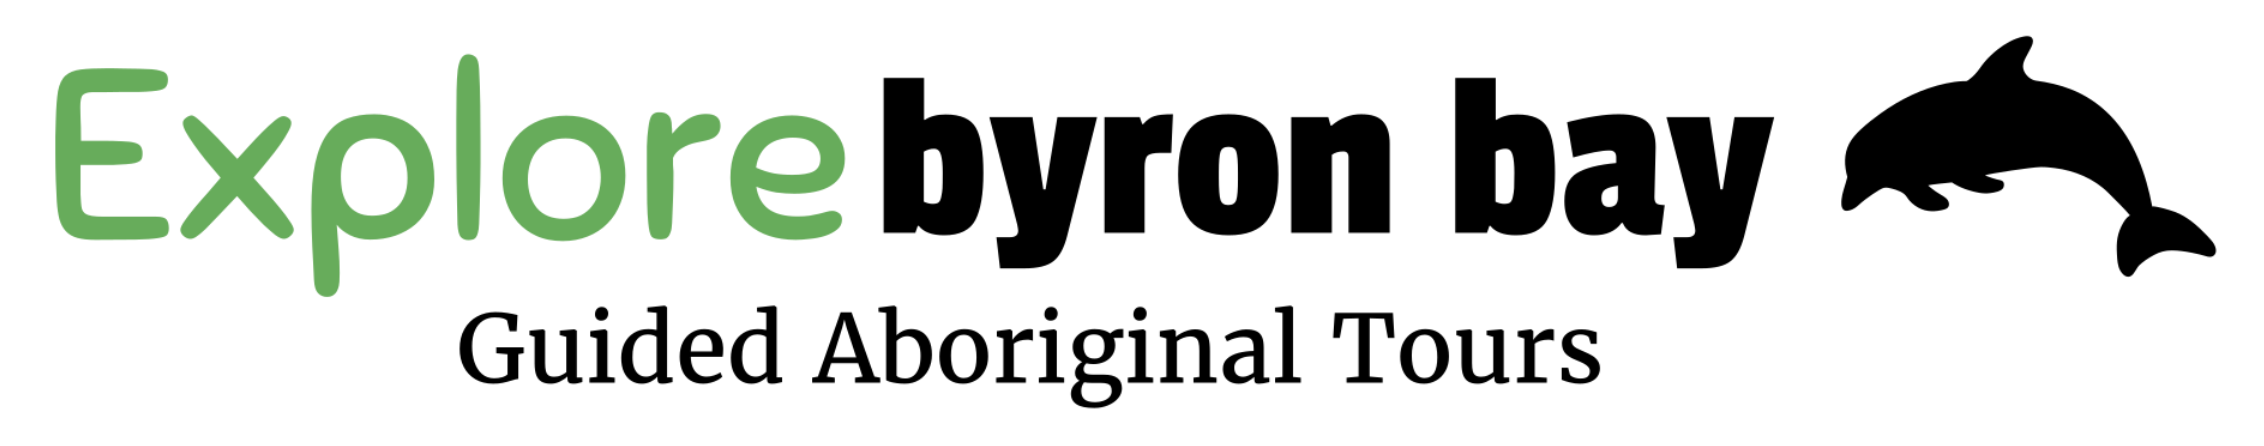 Explore Byron Bay